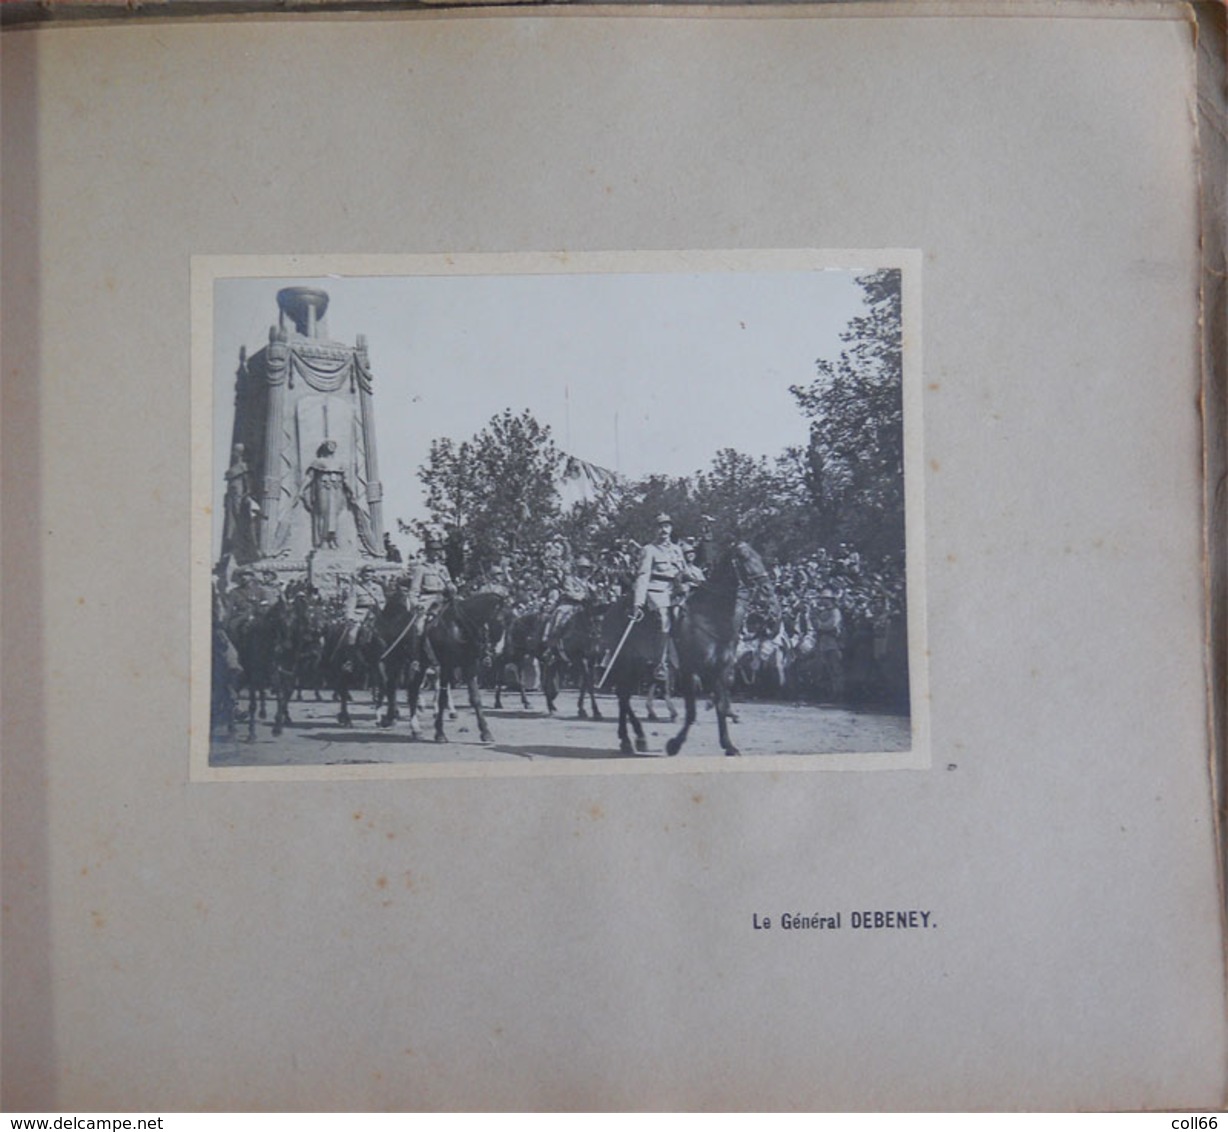 ww1 RARE Album 40 vraies photos Paris 1919 Fêtes de la Victoire Service photographique & cinématographique de Guerre